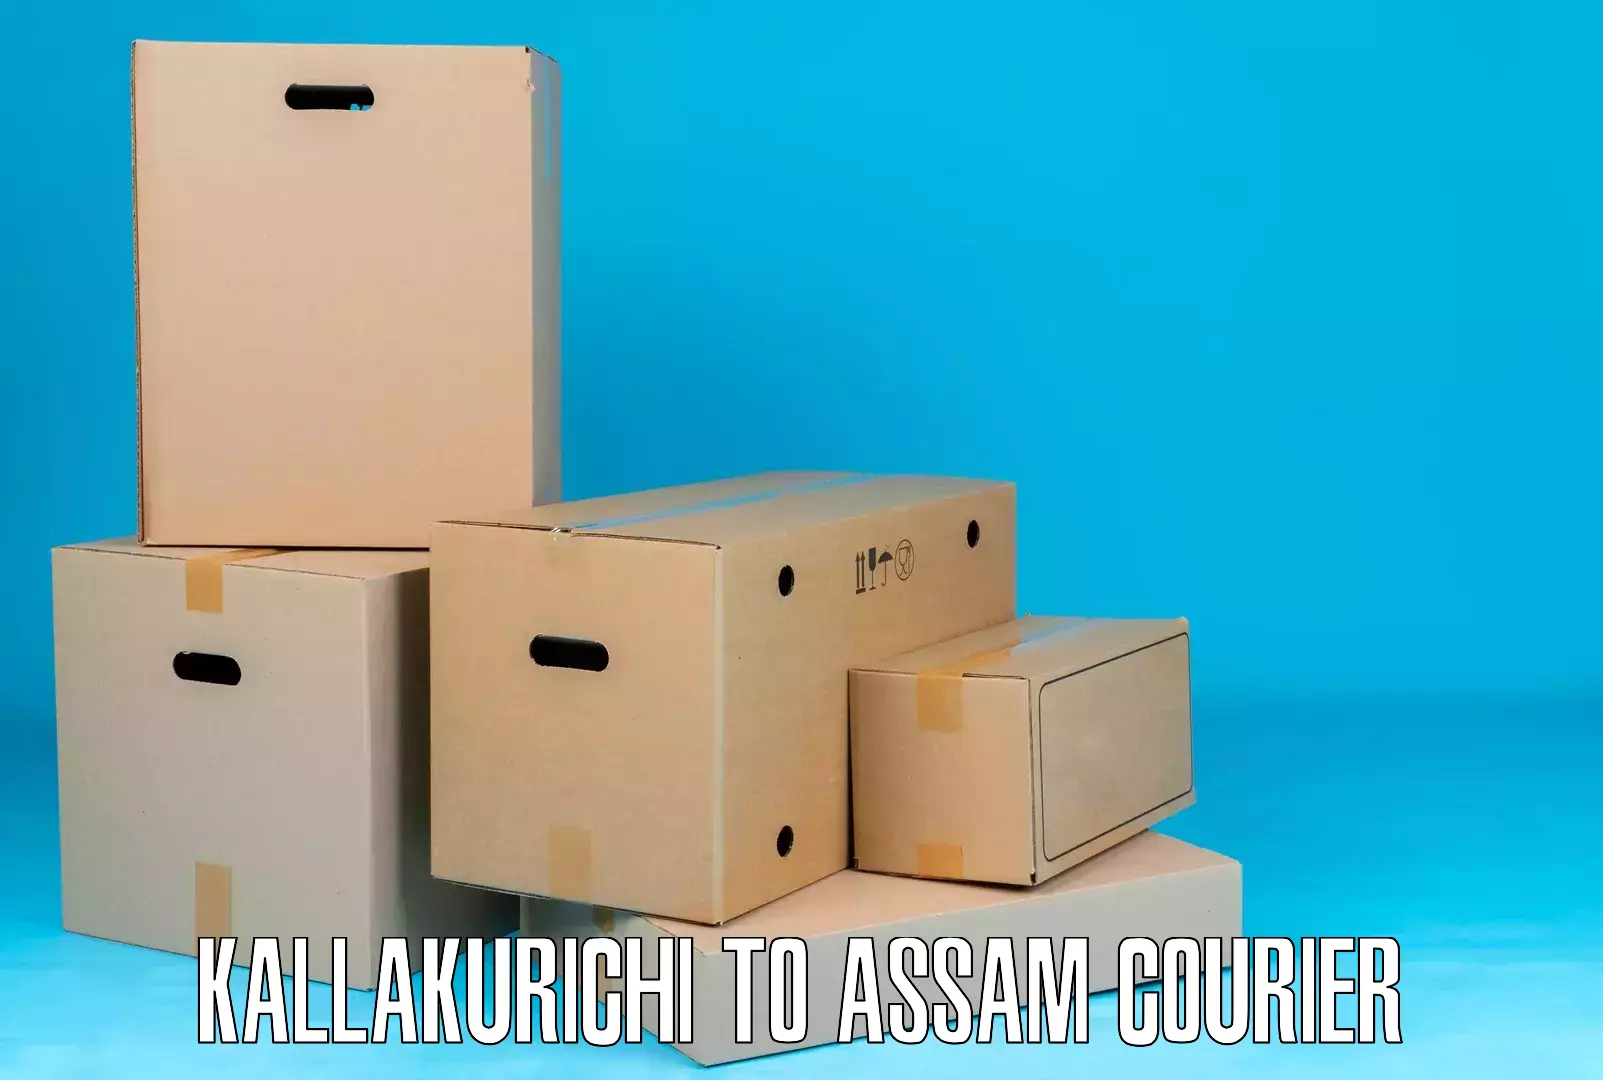 Express mail solutions Kallakurichi to Assam